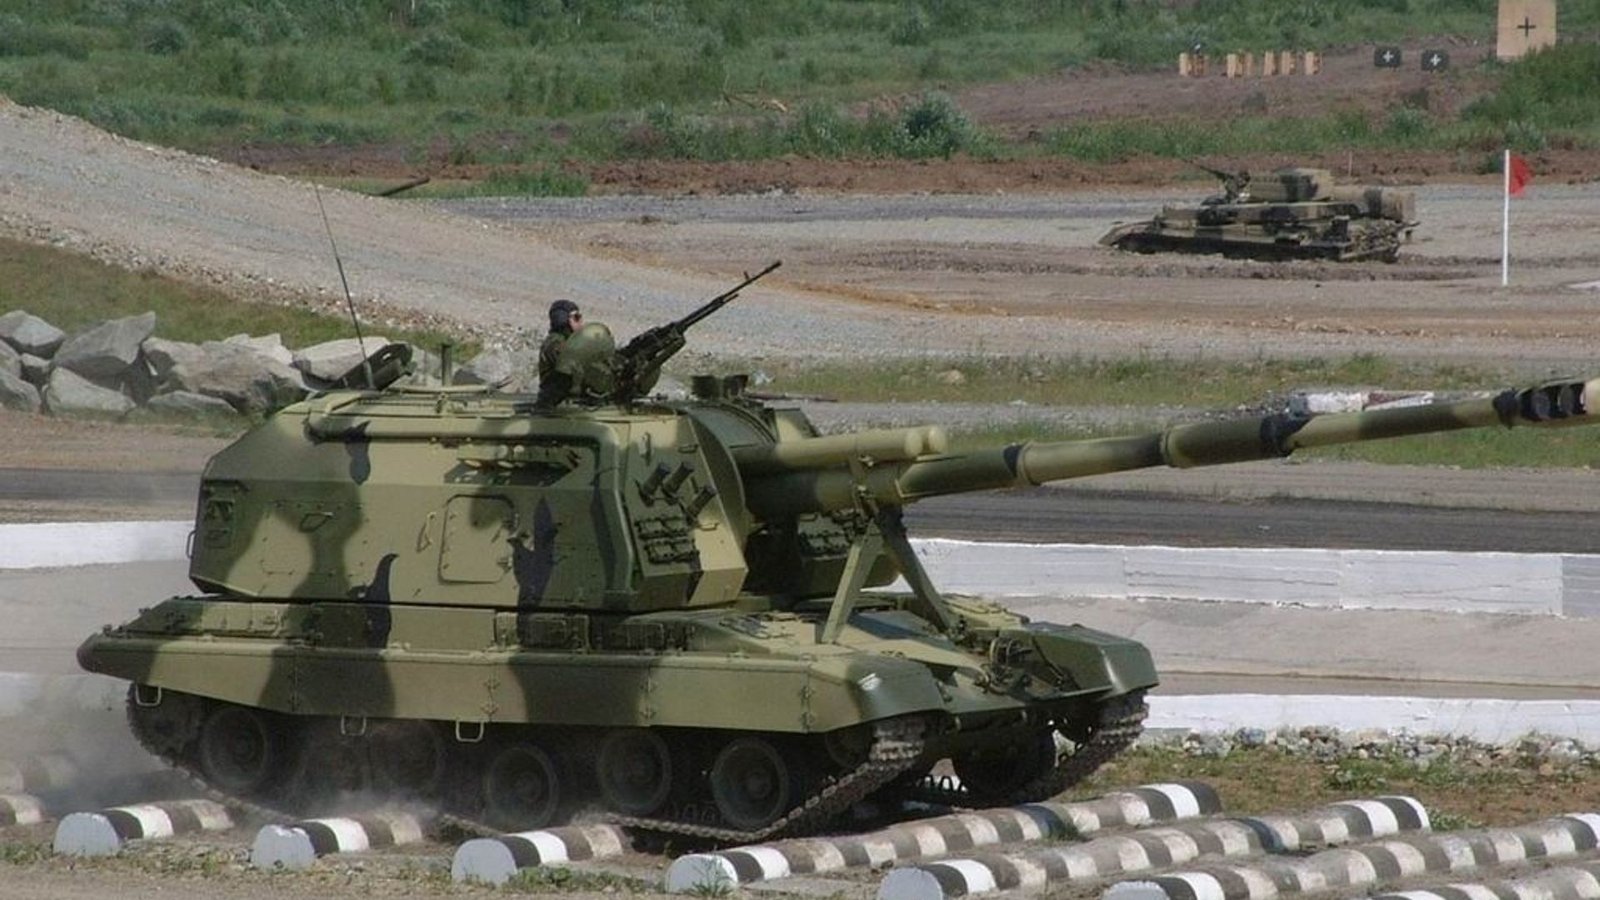 Die 2S19 Msta-S  ist eine in der Sowjetunion entwickelte Selbstfahrlafette. Ab 1989 wurde sie bei der Sowjetarmee eingeführt, um veraltete Panzerartilleriesysteme wie die 2S1 oder 2S3 zu ersetzen. Sie ist seitens der Ukraine und Russlands im Ukrainekrieg im Einsatz.Foto: Wikipedia commons/Alain Servaes/CC BY-SA 3.0